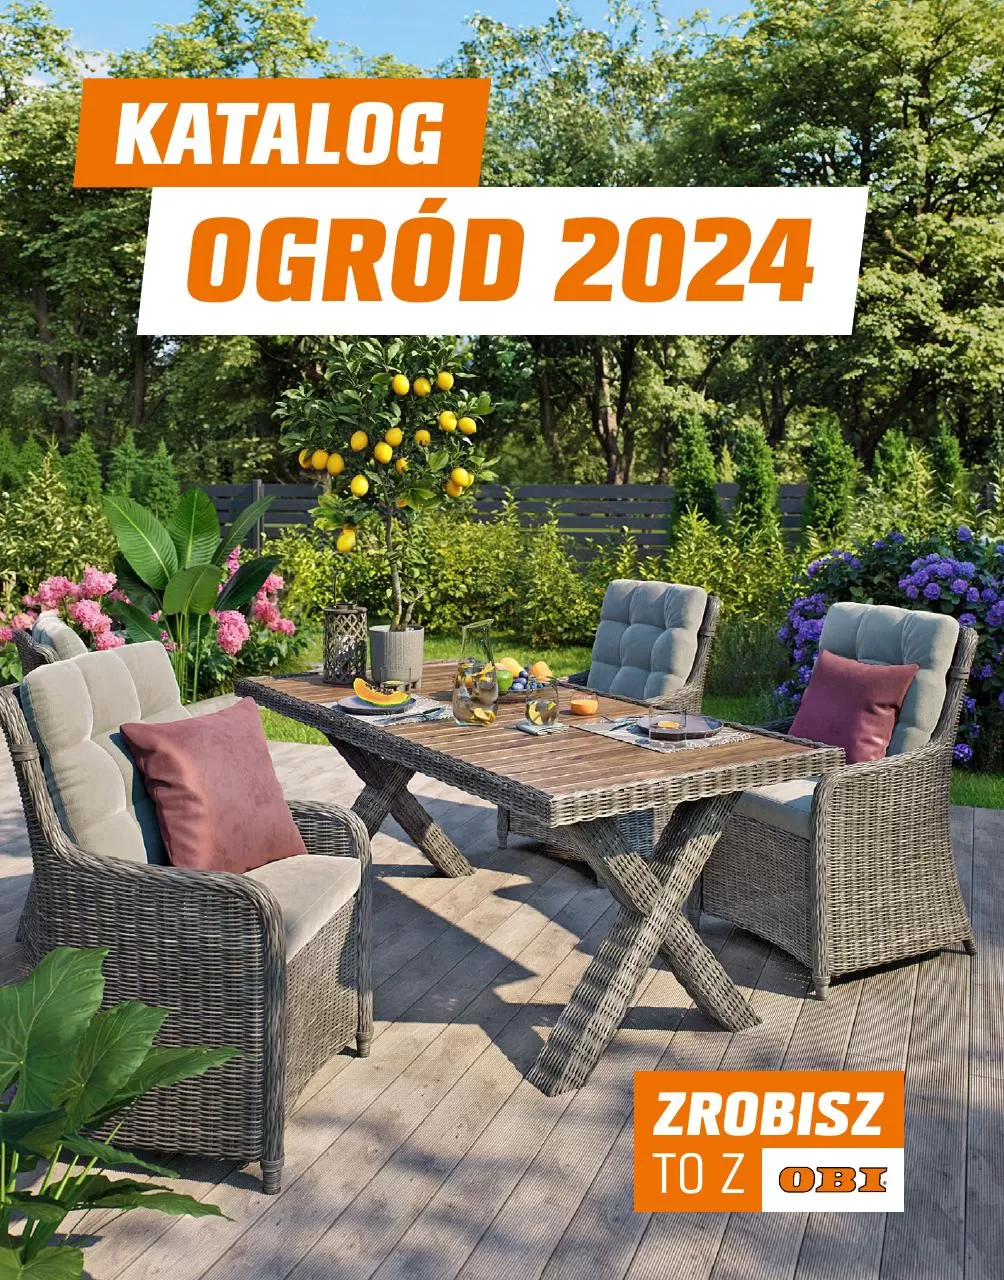 Ulotka gazetka promocyjna: Katalog ogród 2024 ze sklepu Obi dostępna od 09.03 do 30.09